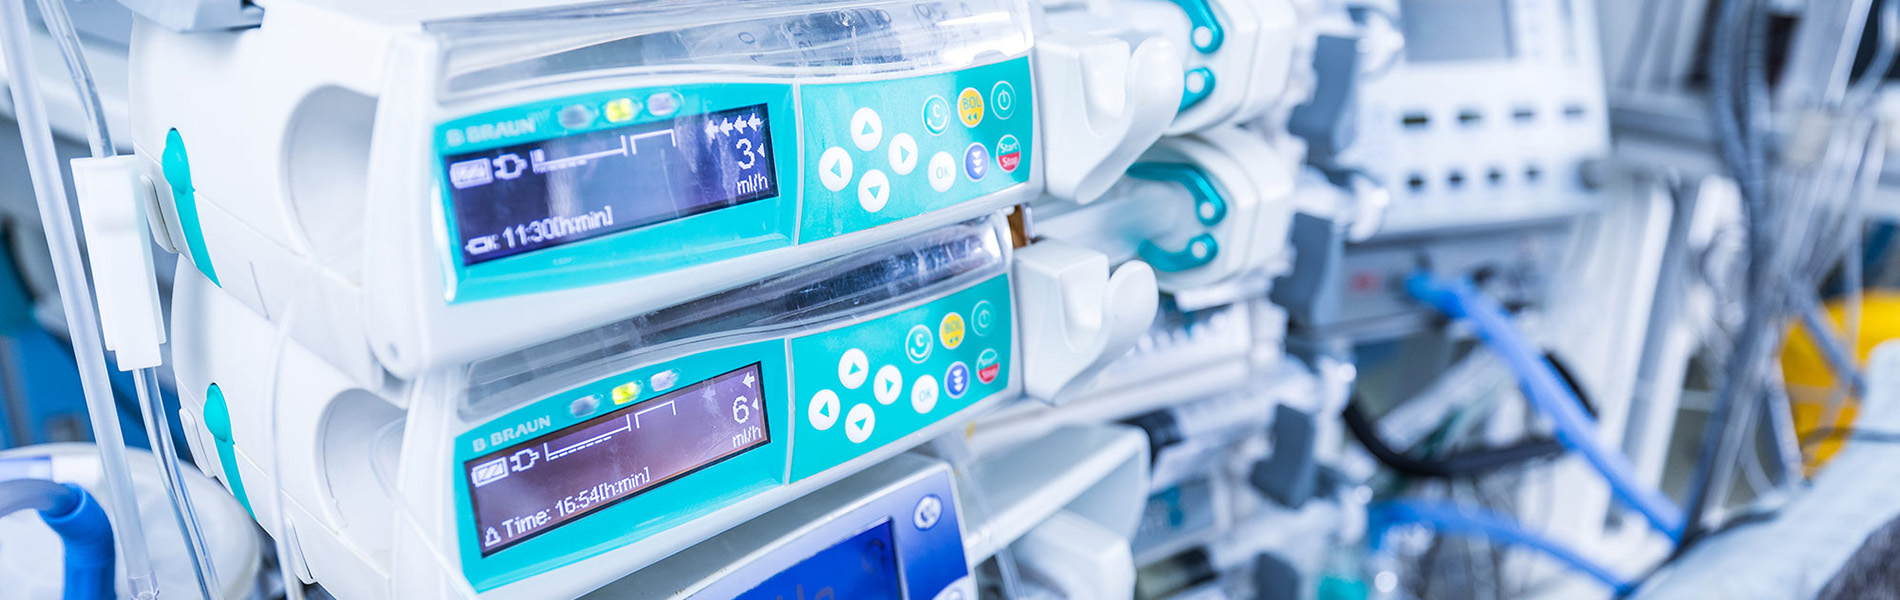 Pompes médicales Paragon-ID avec écrans digitaux en fonction, illustrant la technologie avancée dans le domaine médical